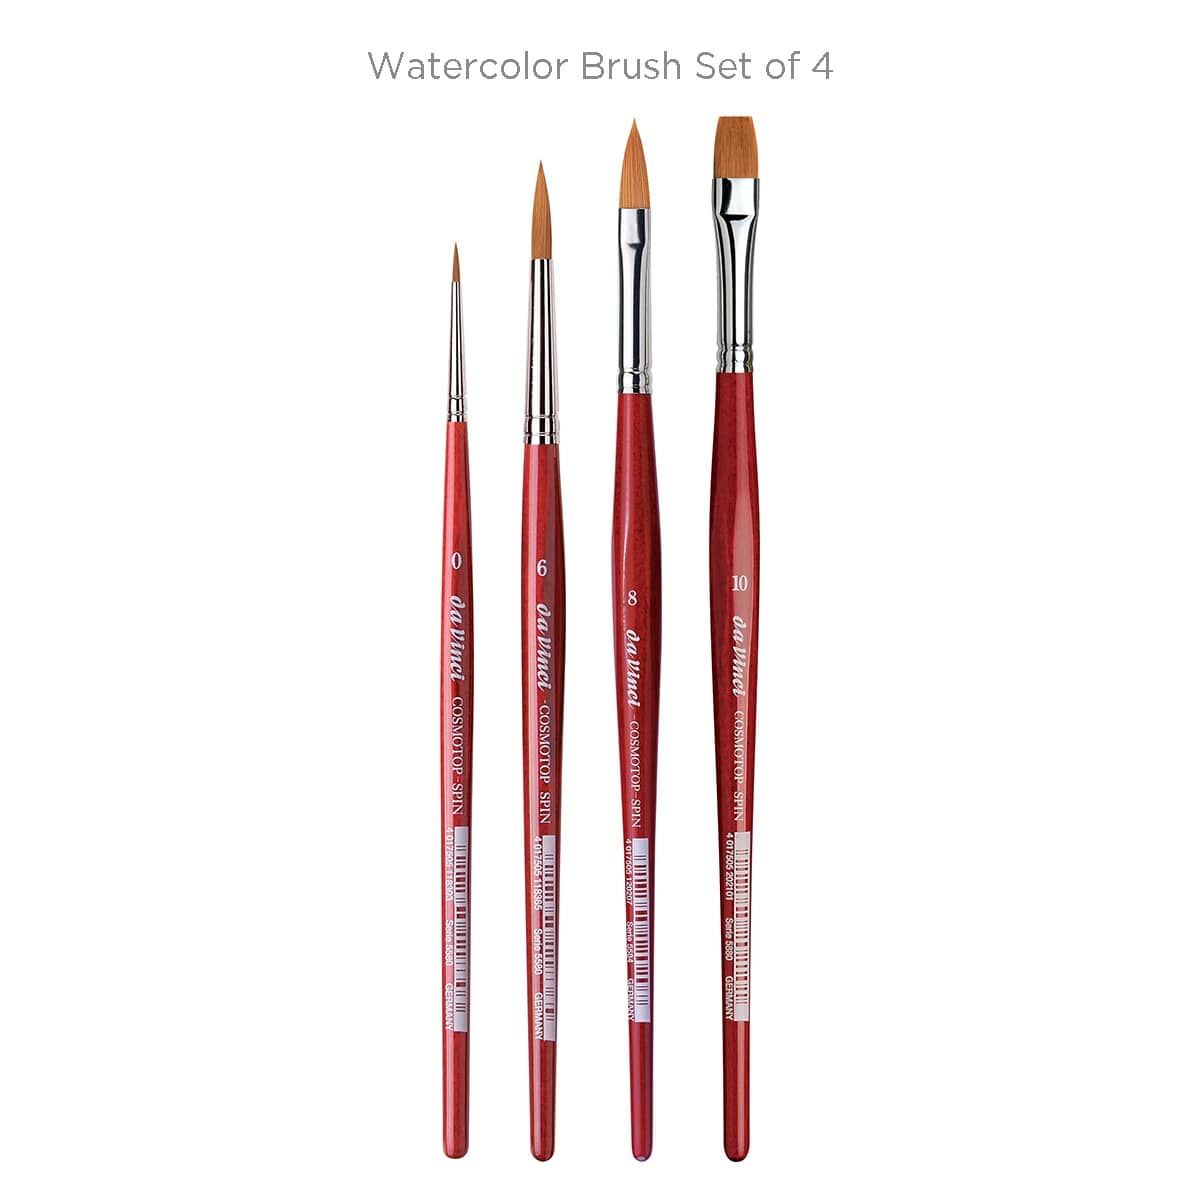 Watercolor Brush Set of 4